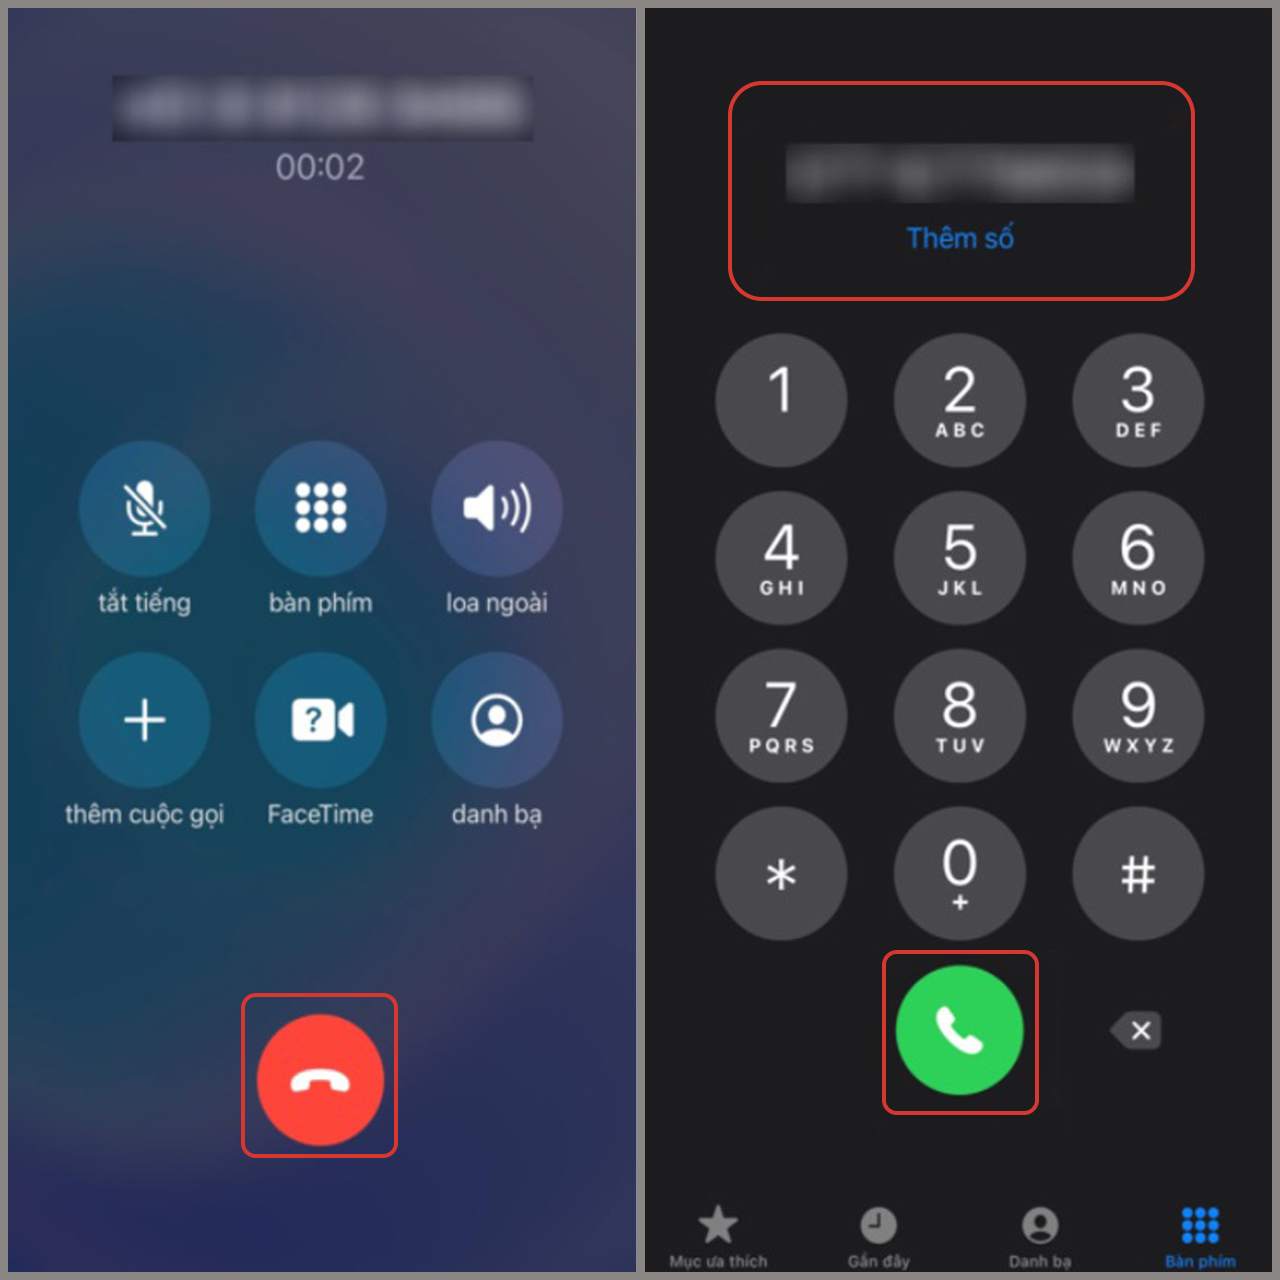 Cách ghi âm cuộc gọi trên iPhone đơn giản, dễ thực hiện – GEARVN.COM